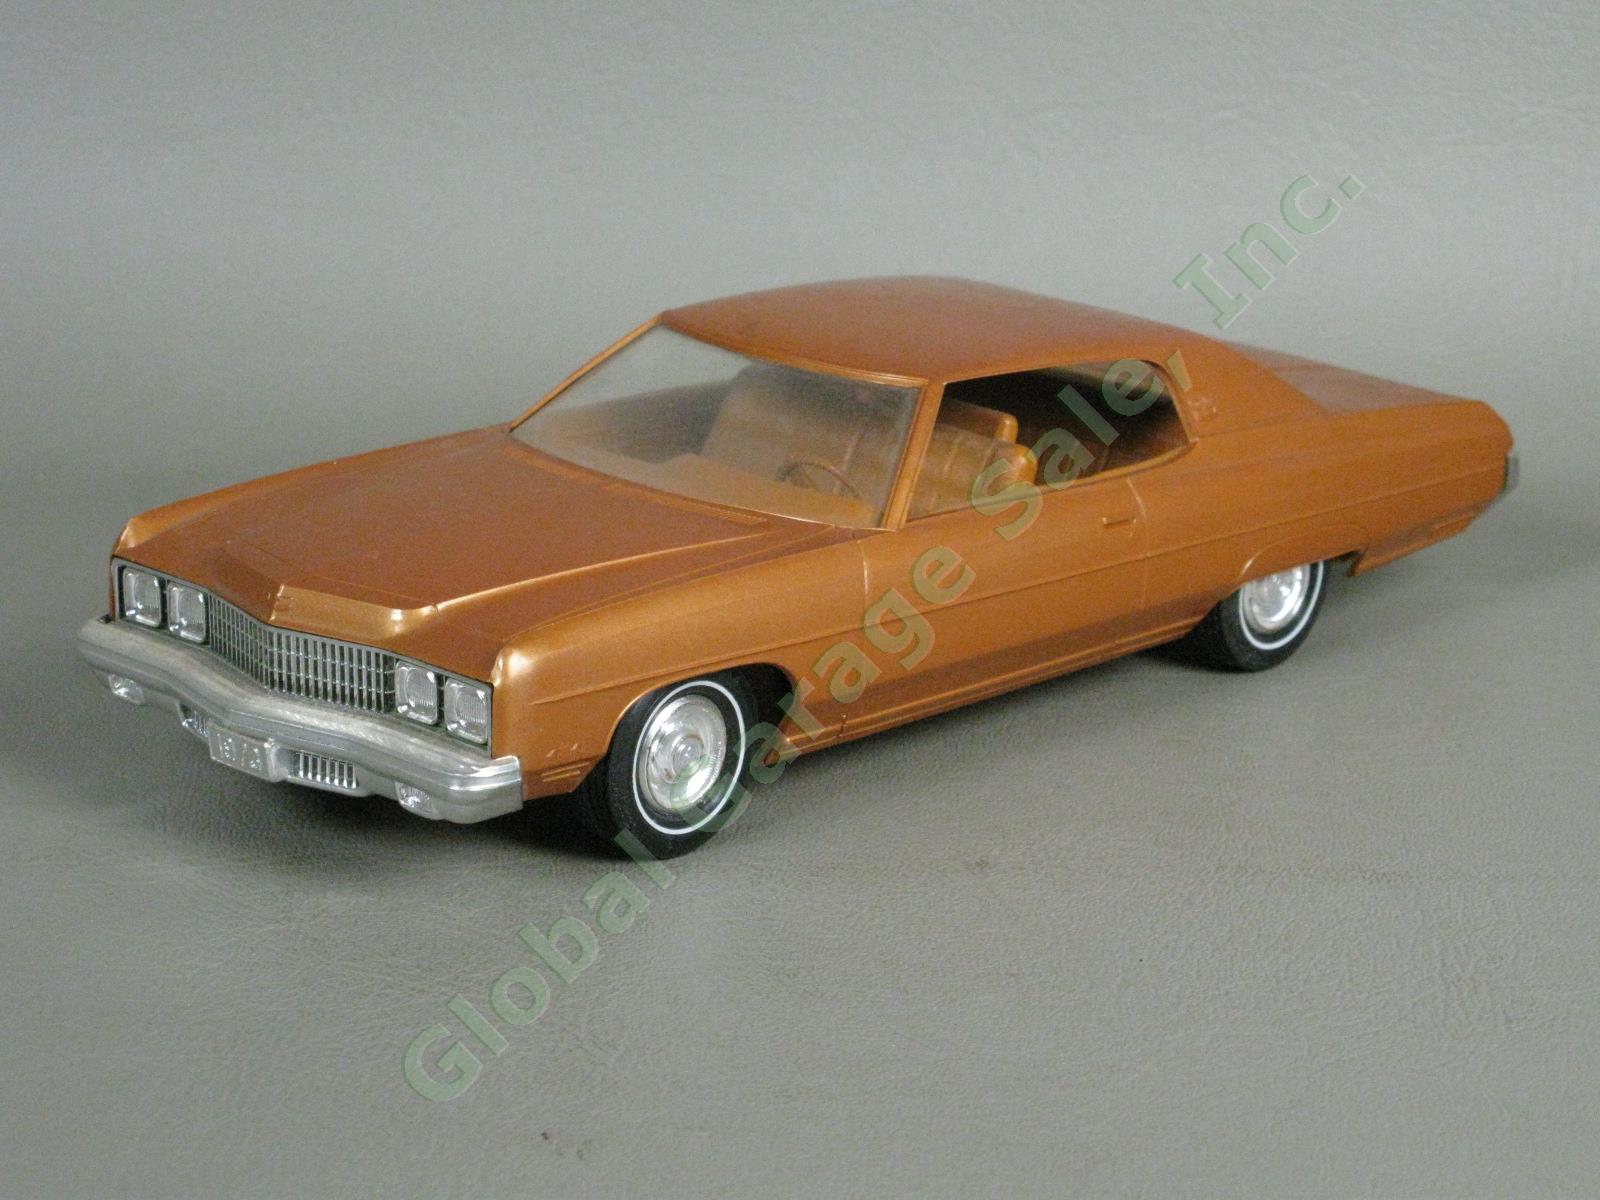 VTG 1973 Chevrolet Caprice Classic Medium Orange Plastic Dealer Promo Model Car